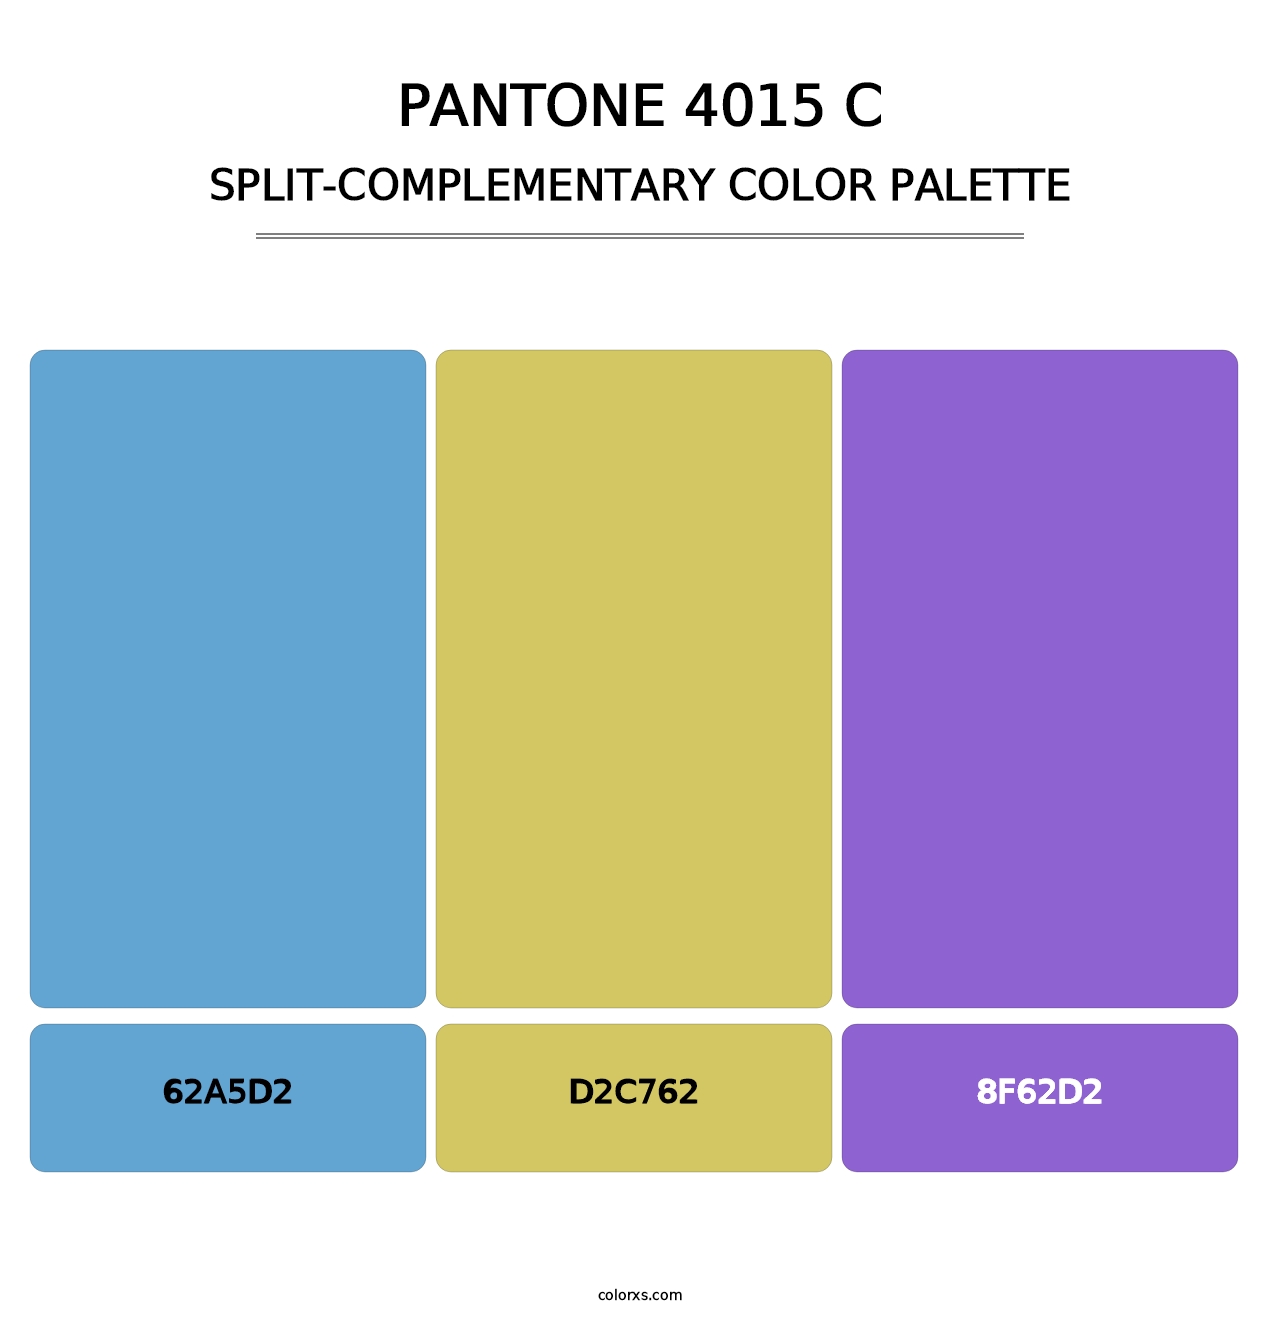 PANTONE 4015 C - Split-Complementary Color Palette